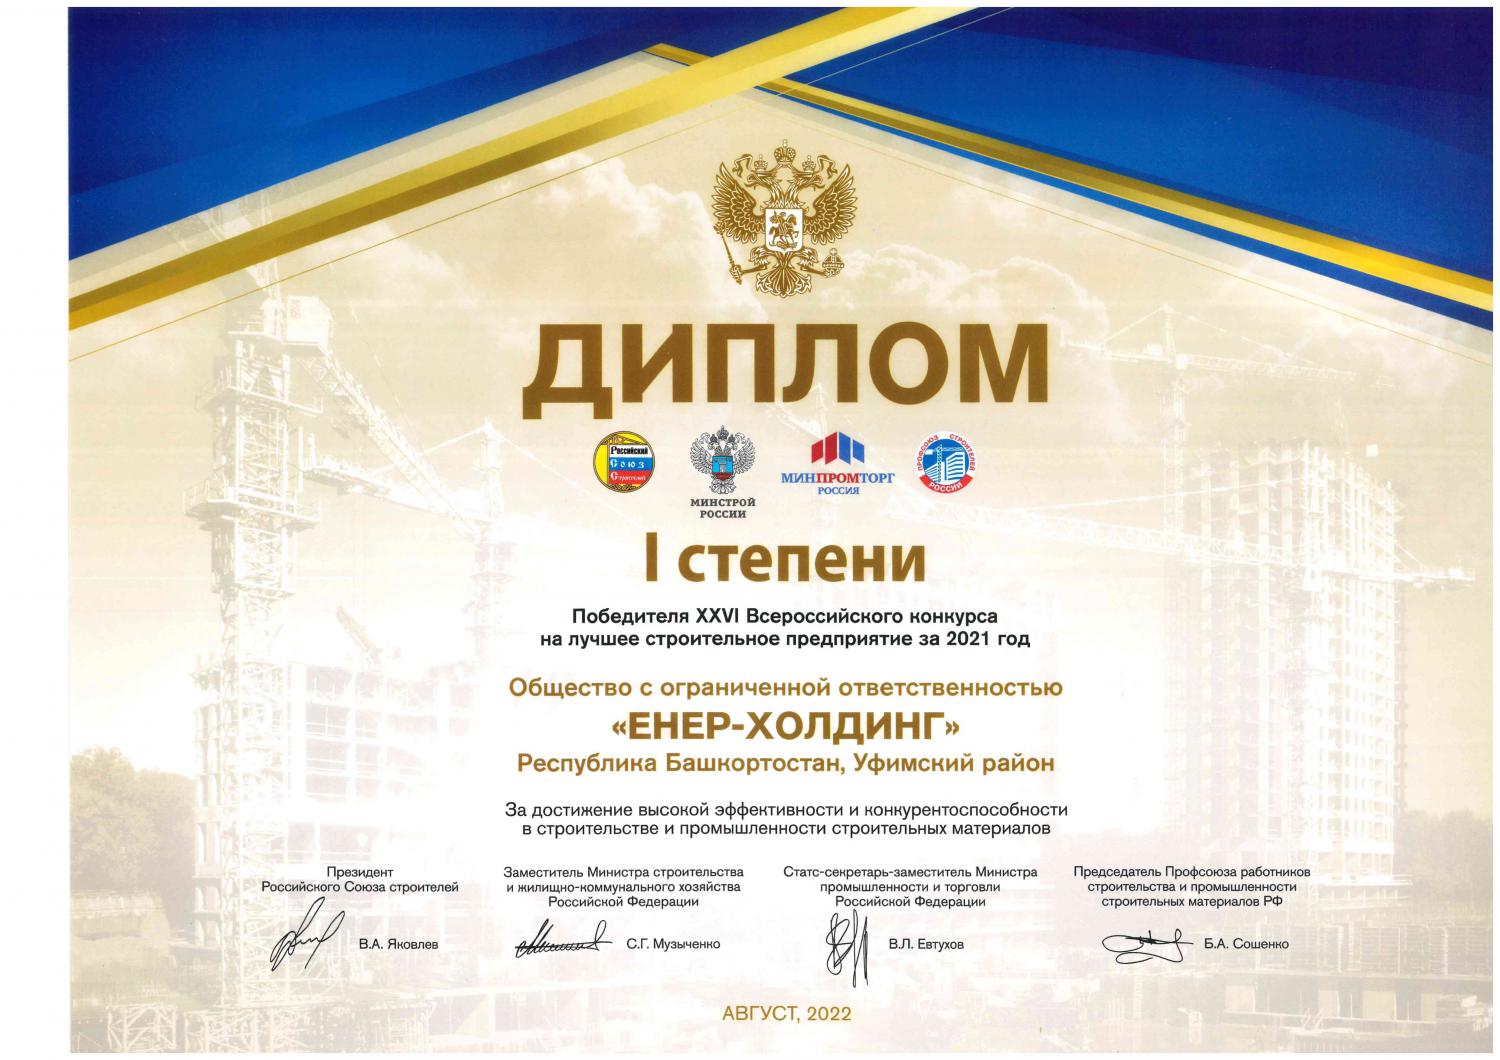 Победитель XXVI Всероссийского конкурса на лучшее строительное предприятие за 2021 год